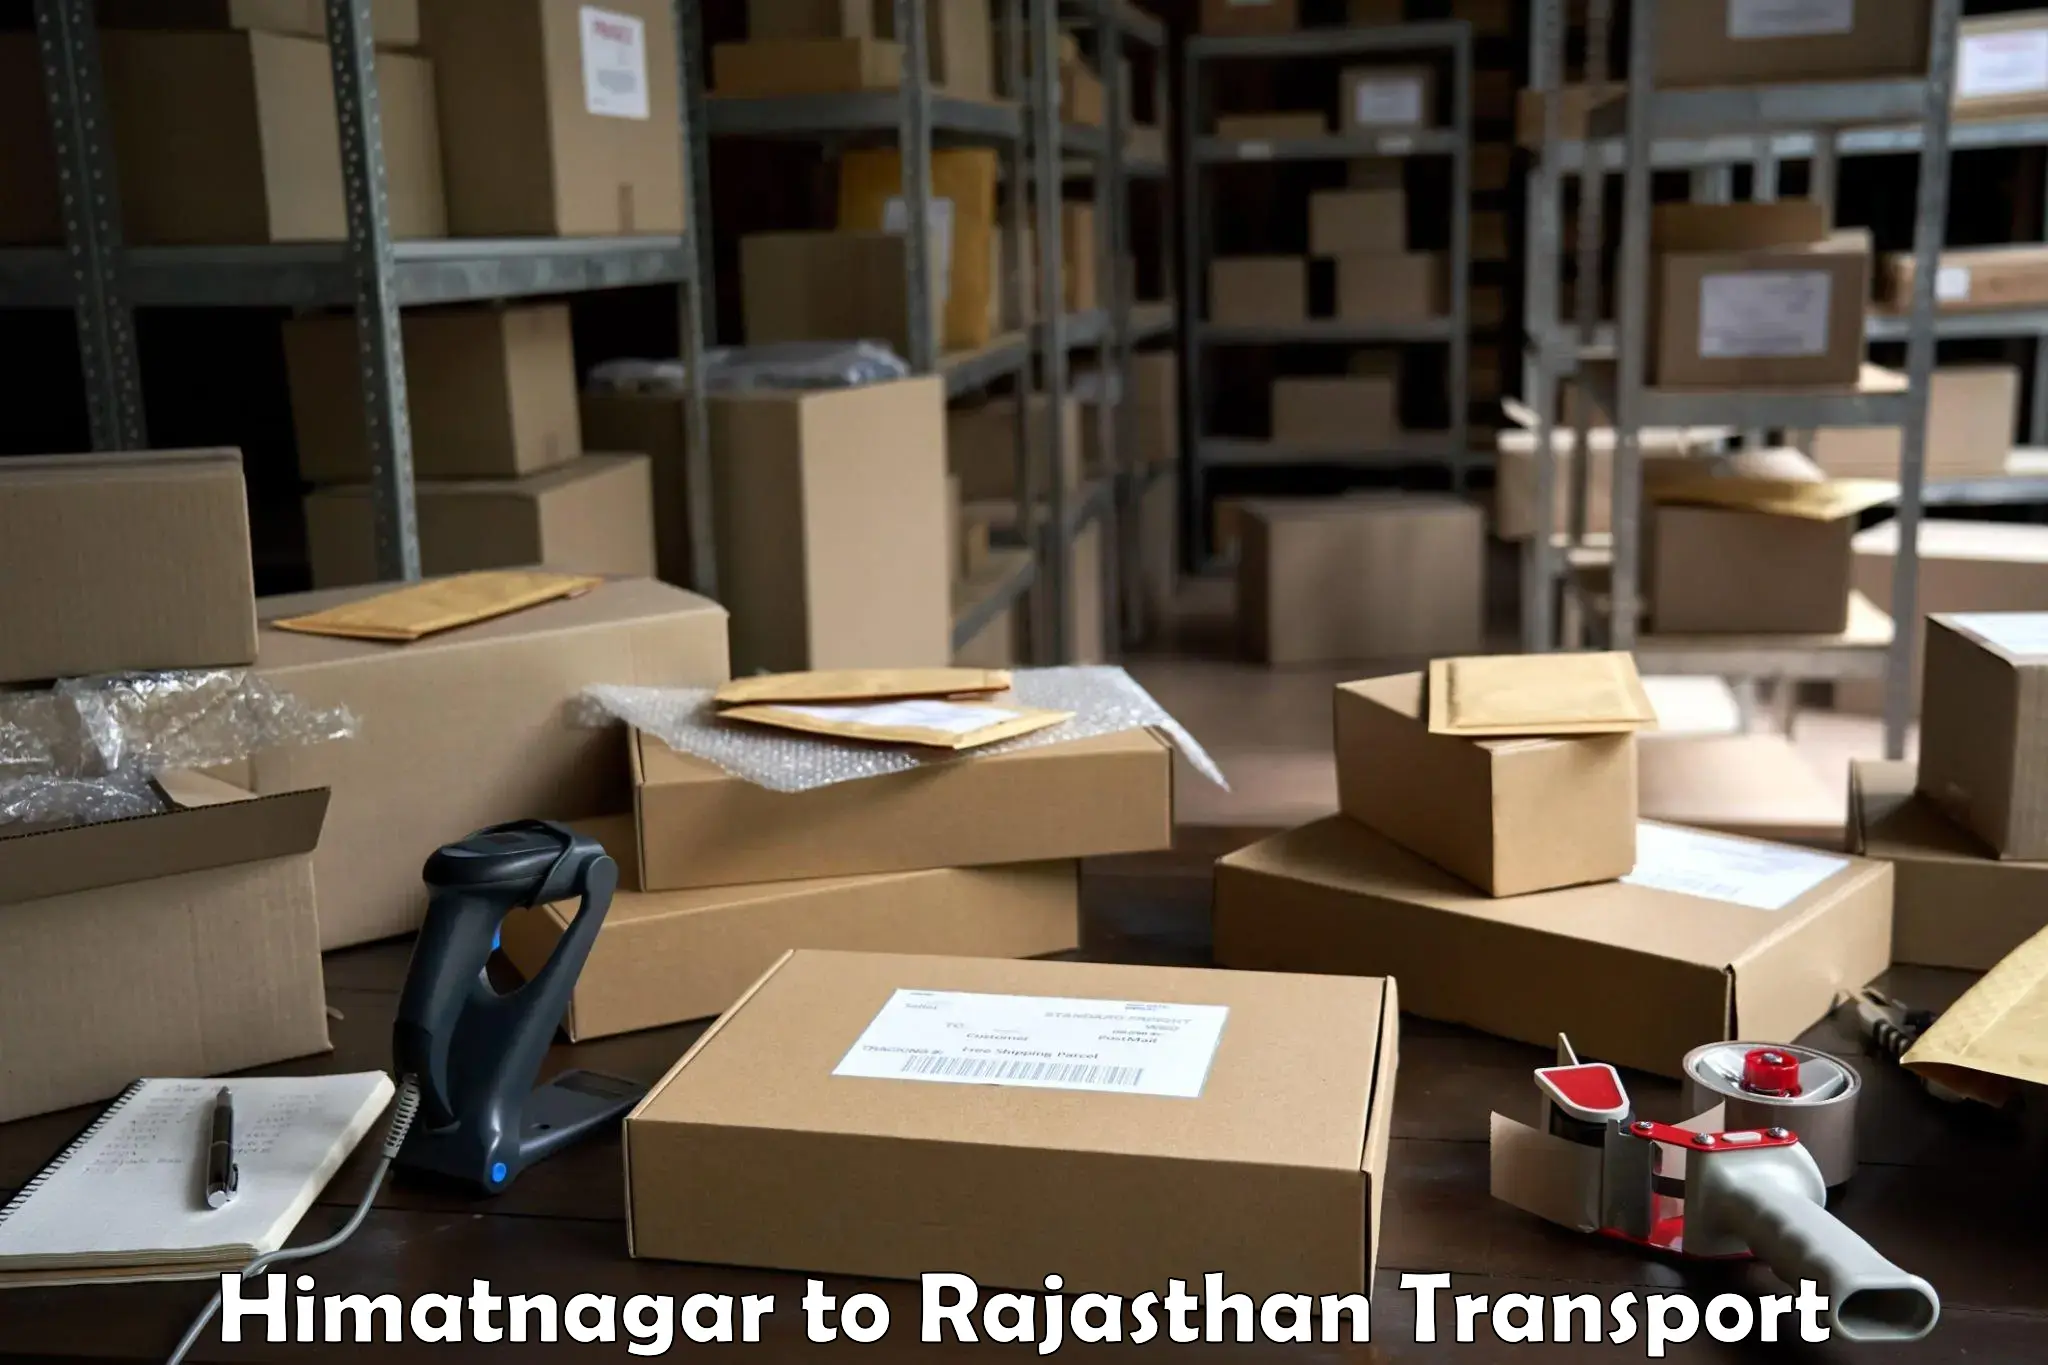 Commercial transport service Himatnagar to Deogarh Rajsamand